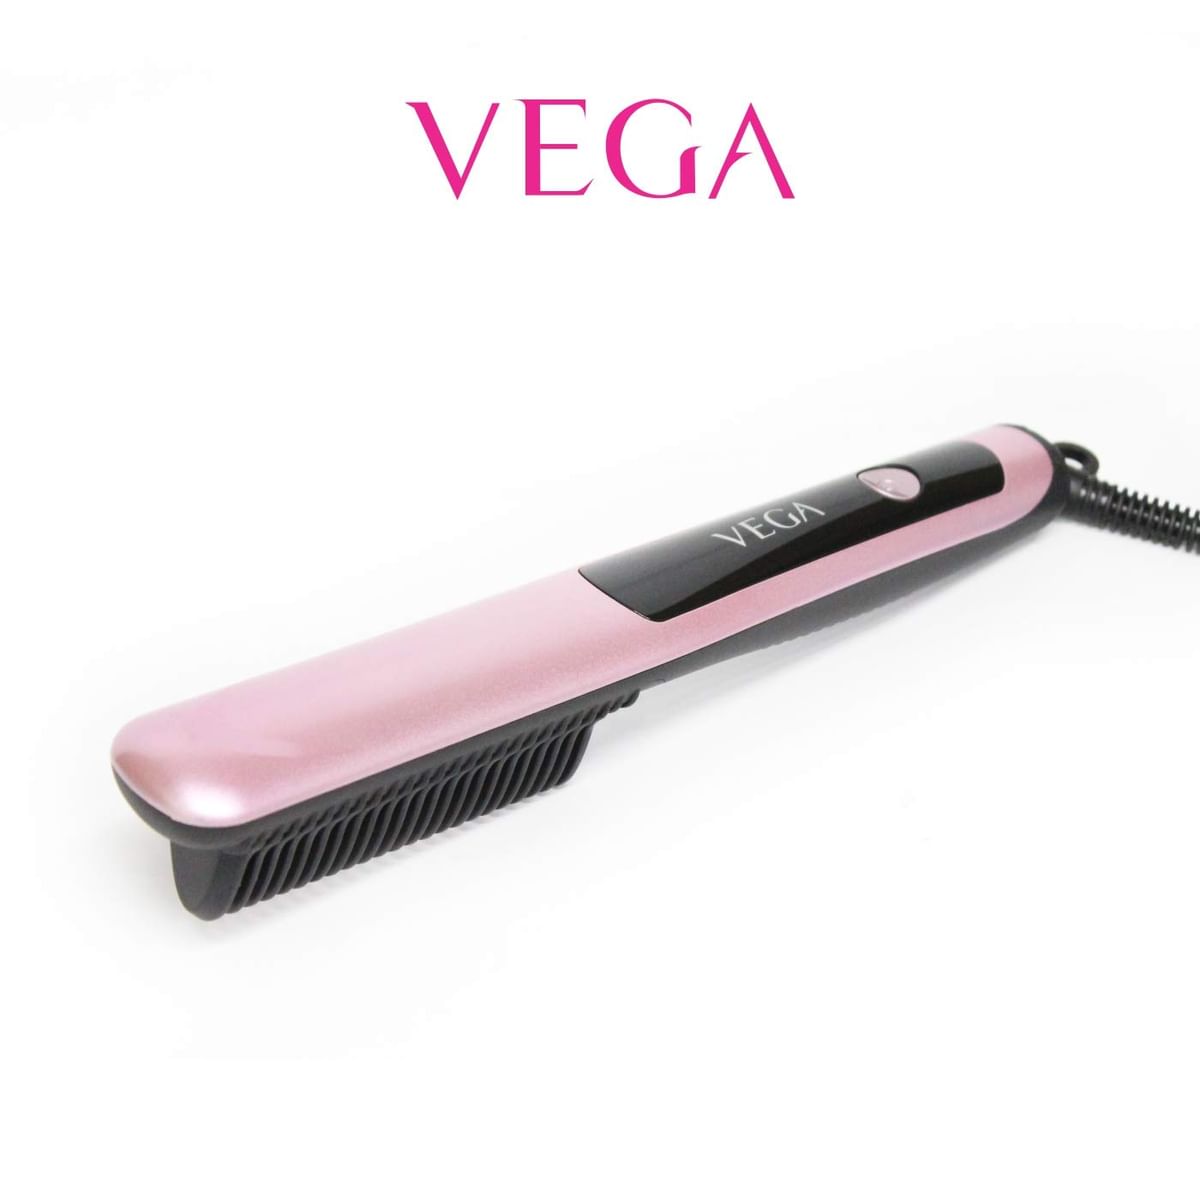 Vega Hair Straighteners Between ₹1,000 and ₹2,000 | Smartprix